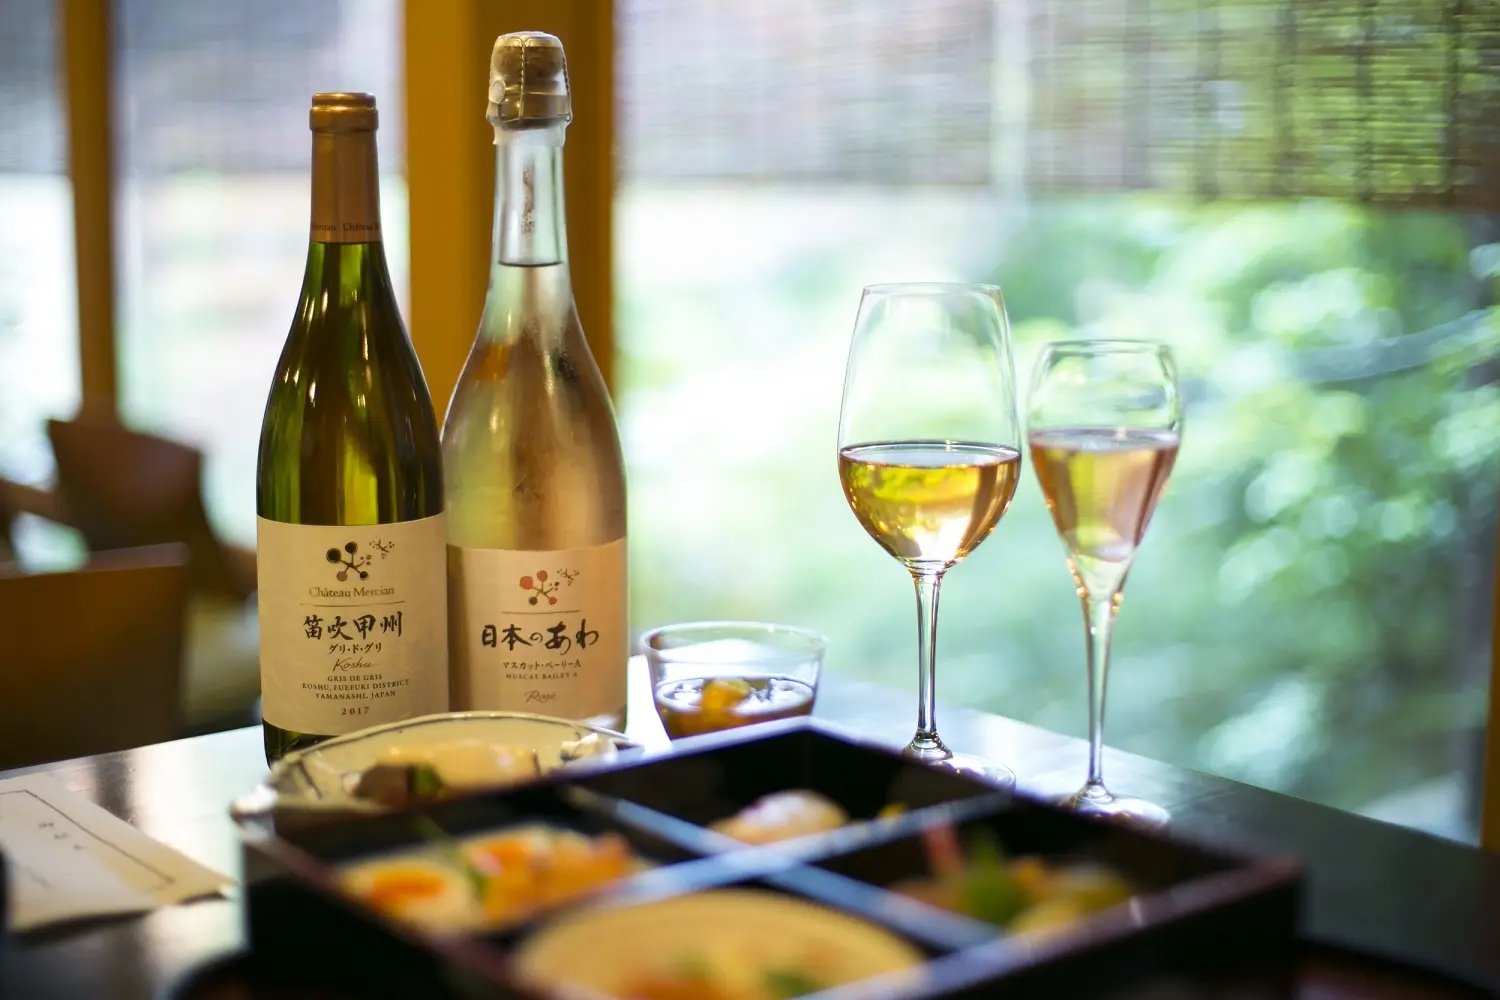 素晴らしい日本庭園を眺めながら、日本ワインを味わう……シャトー・メルシャン『Tasting Nippon』イベントレポート【飲むんだったら、イケてるワインWEB特別篇】_1_3